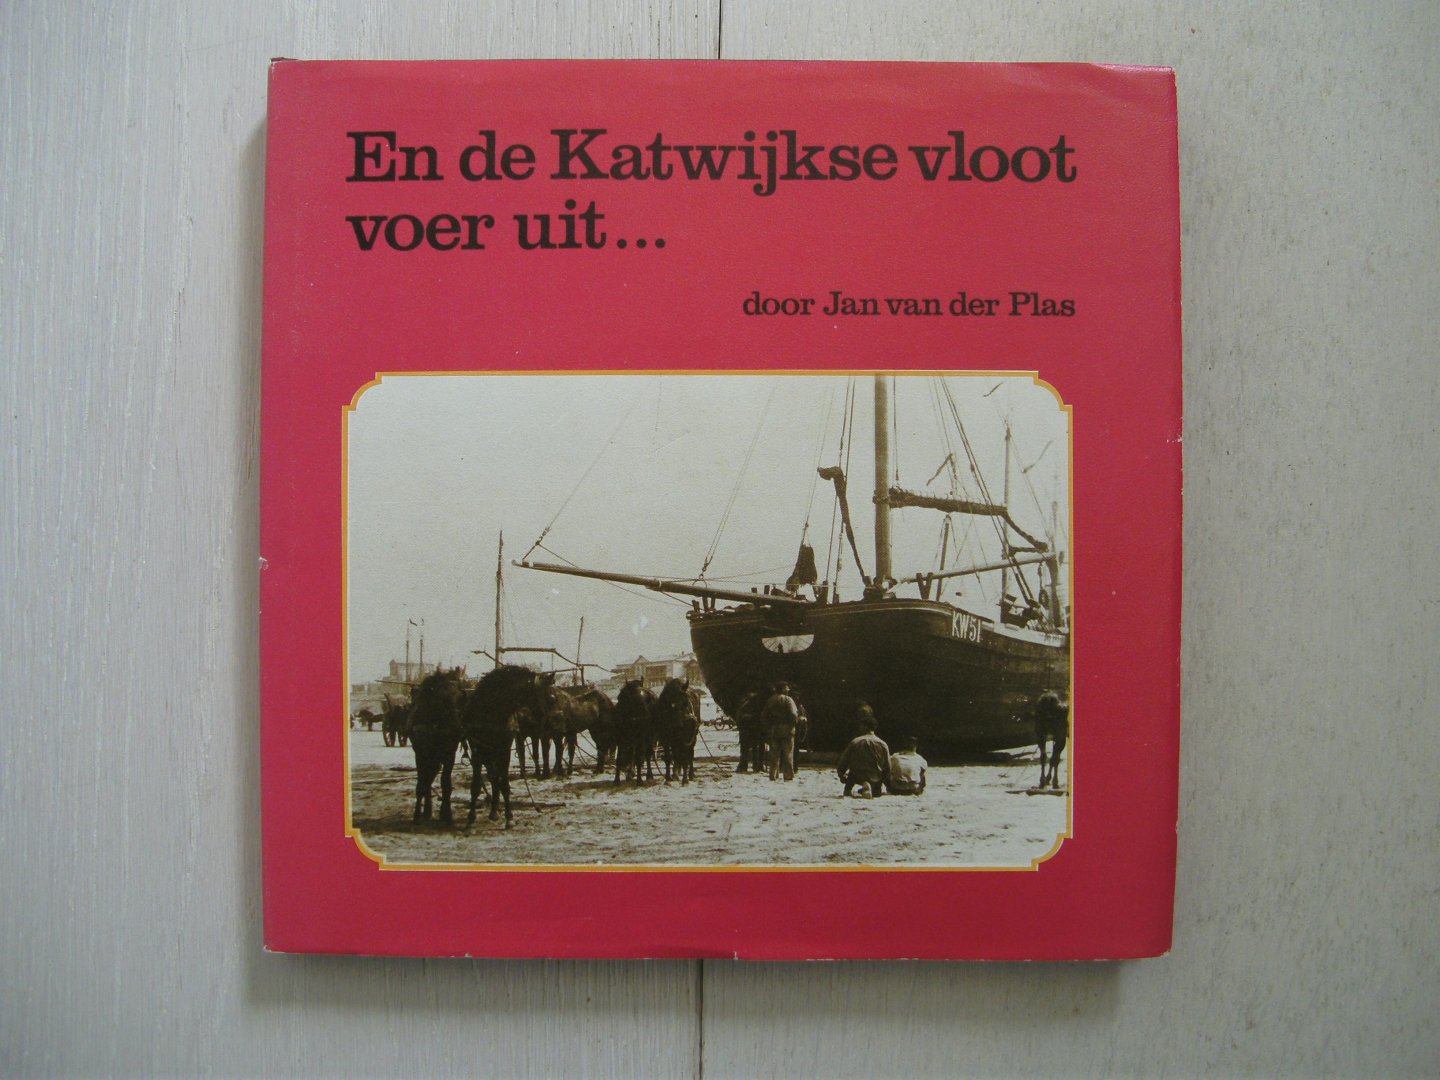 Plas,Jan van der - En de Katwijkse vloot voer uit...